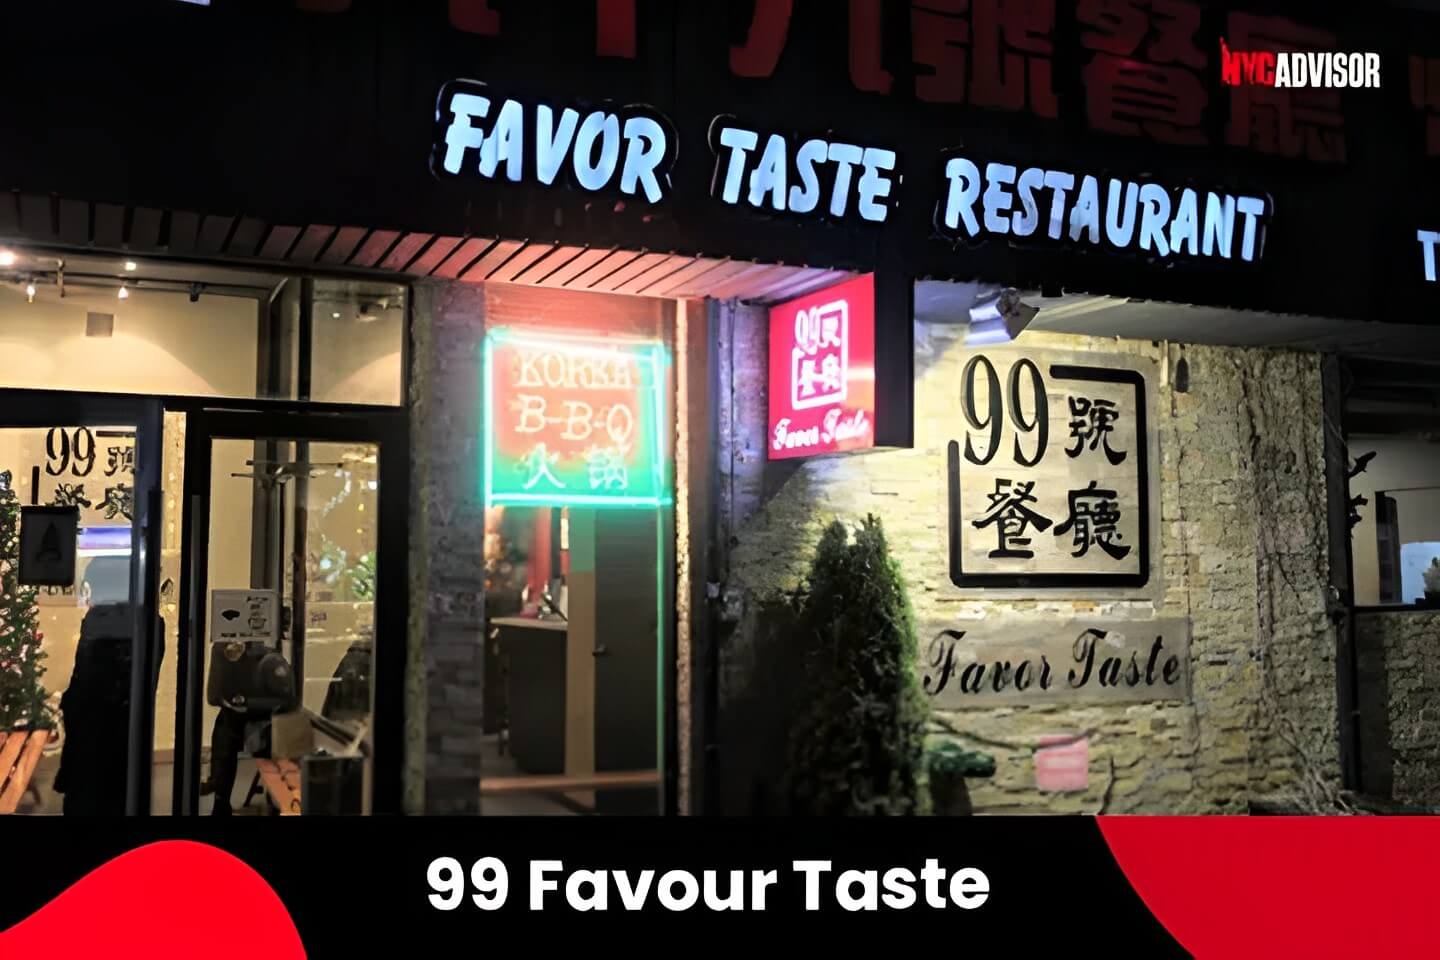 99 Favour Taste Restaurant in New York City